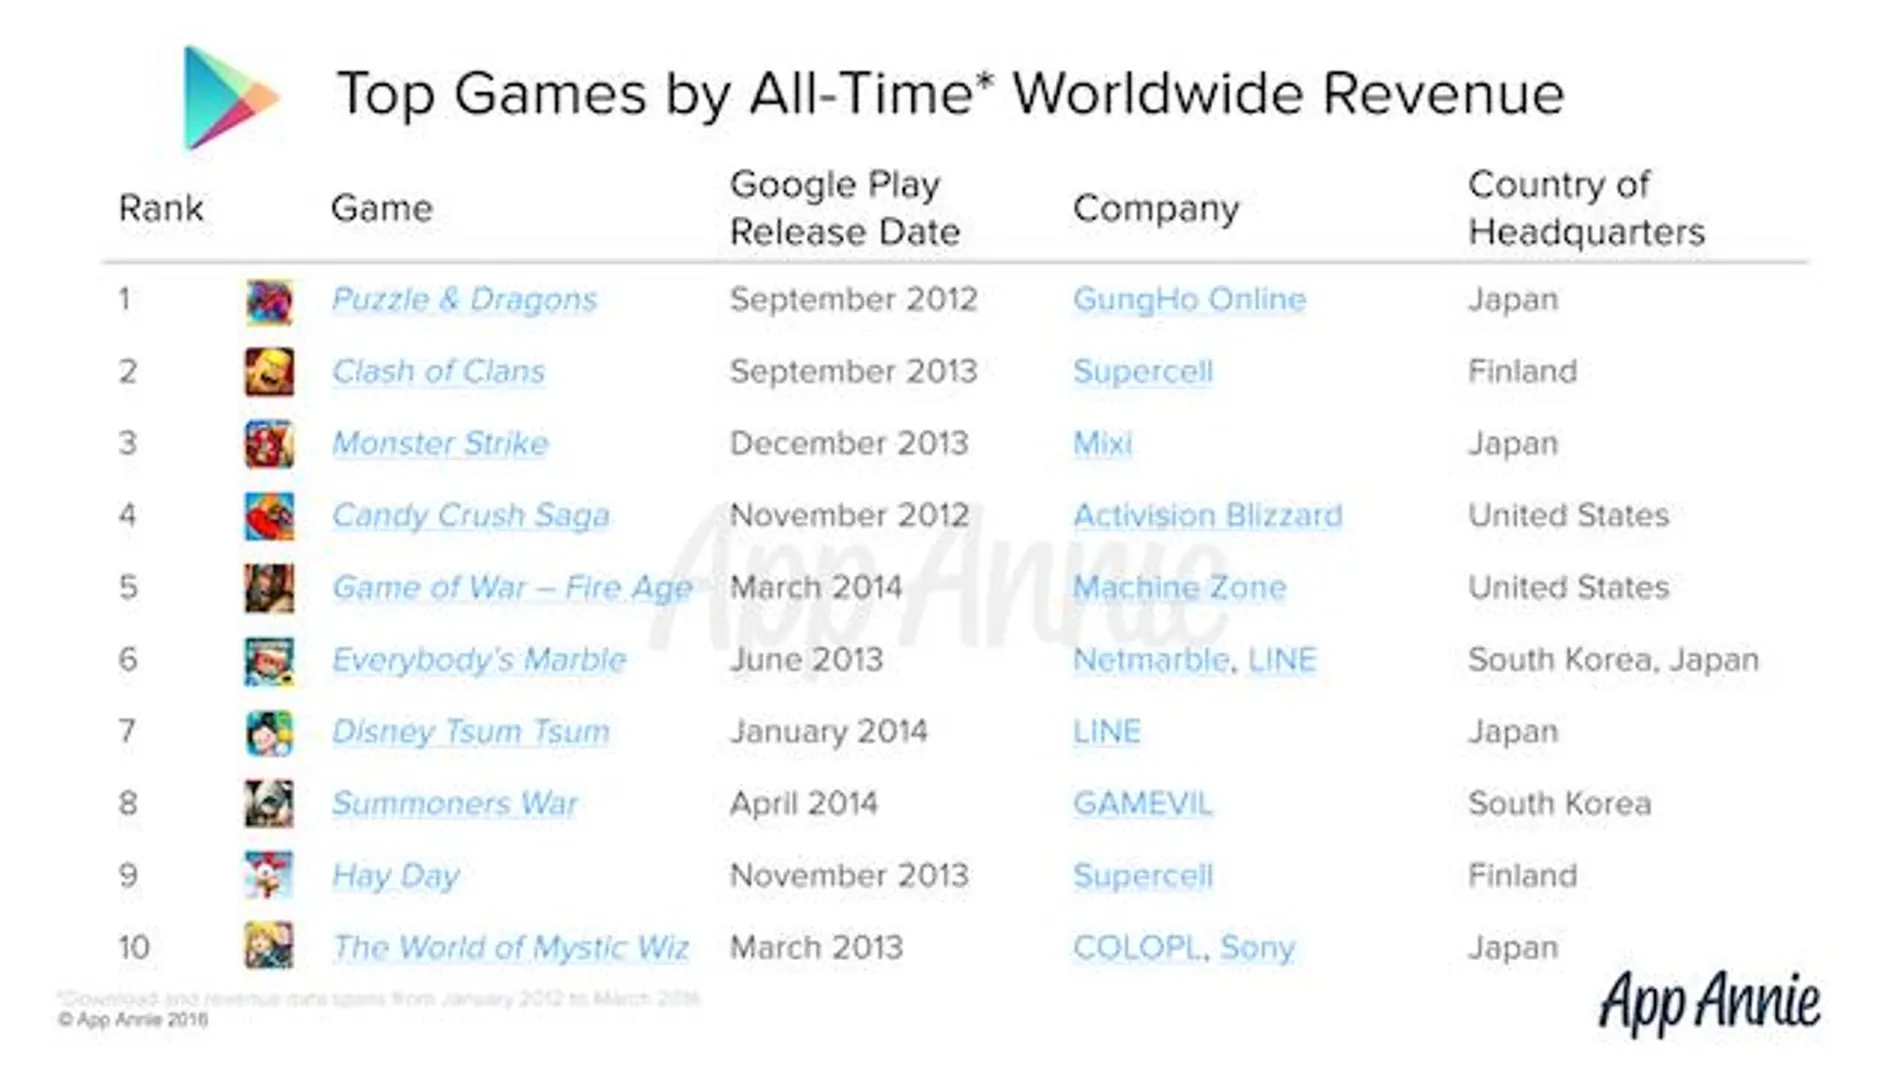 Los juegos más descargados de Google Play de la historia